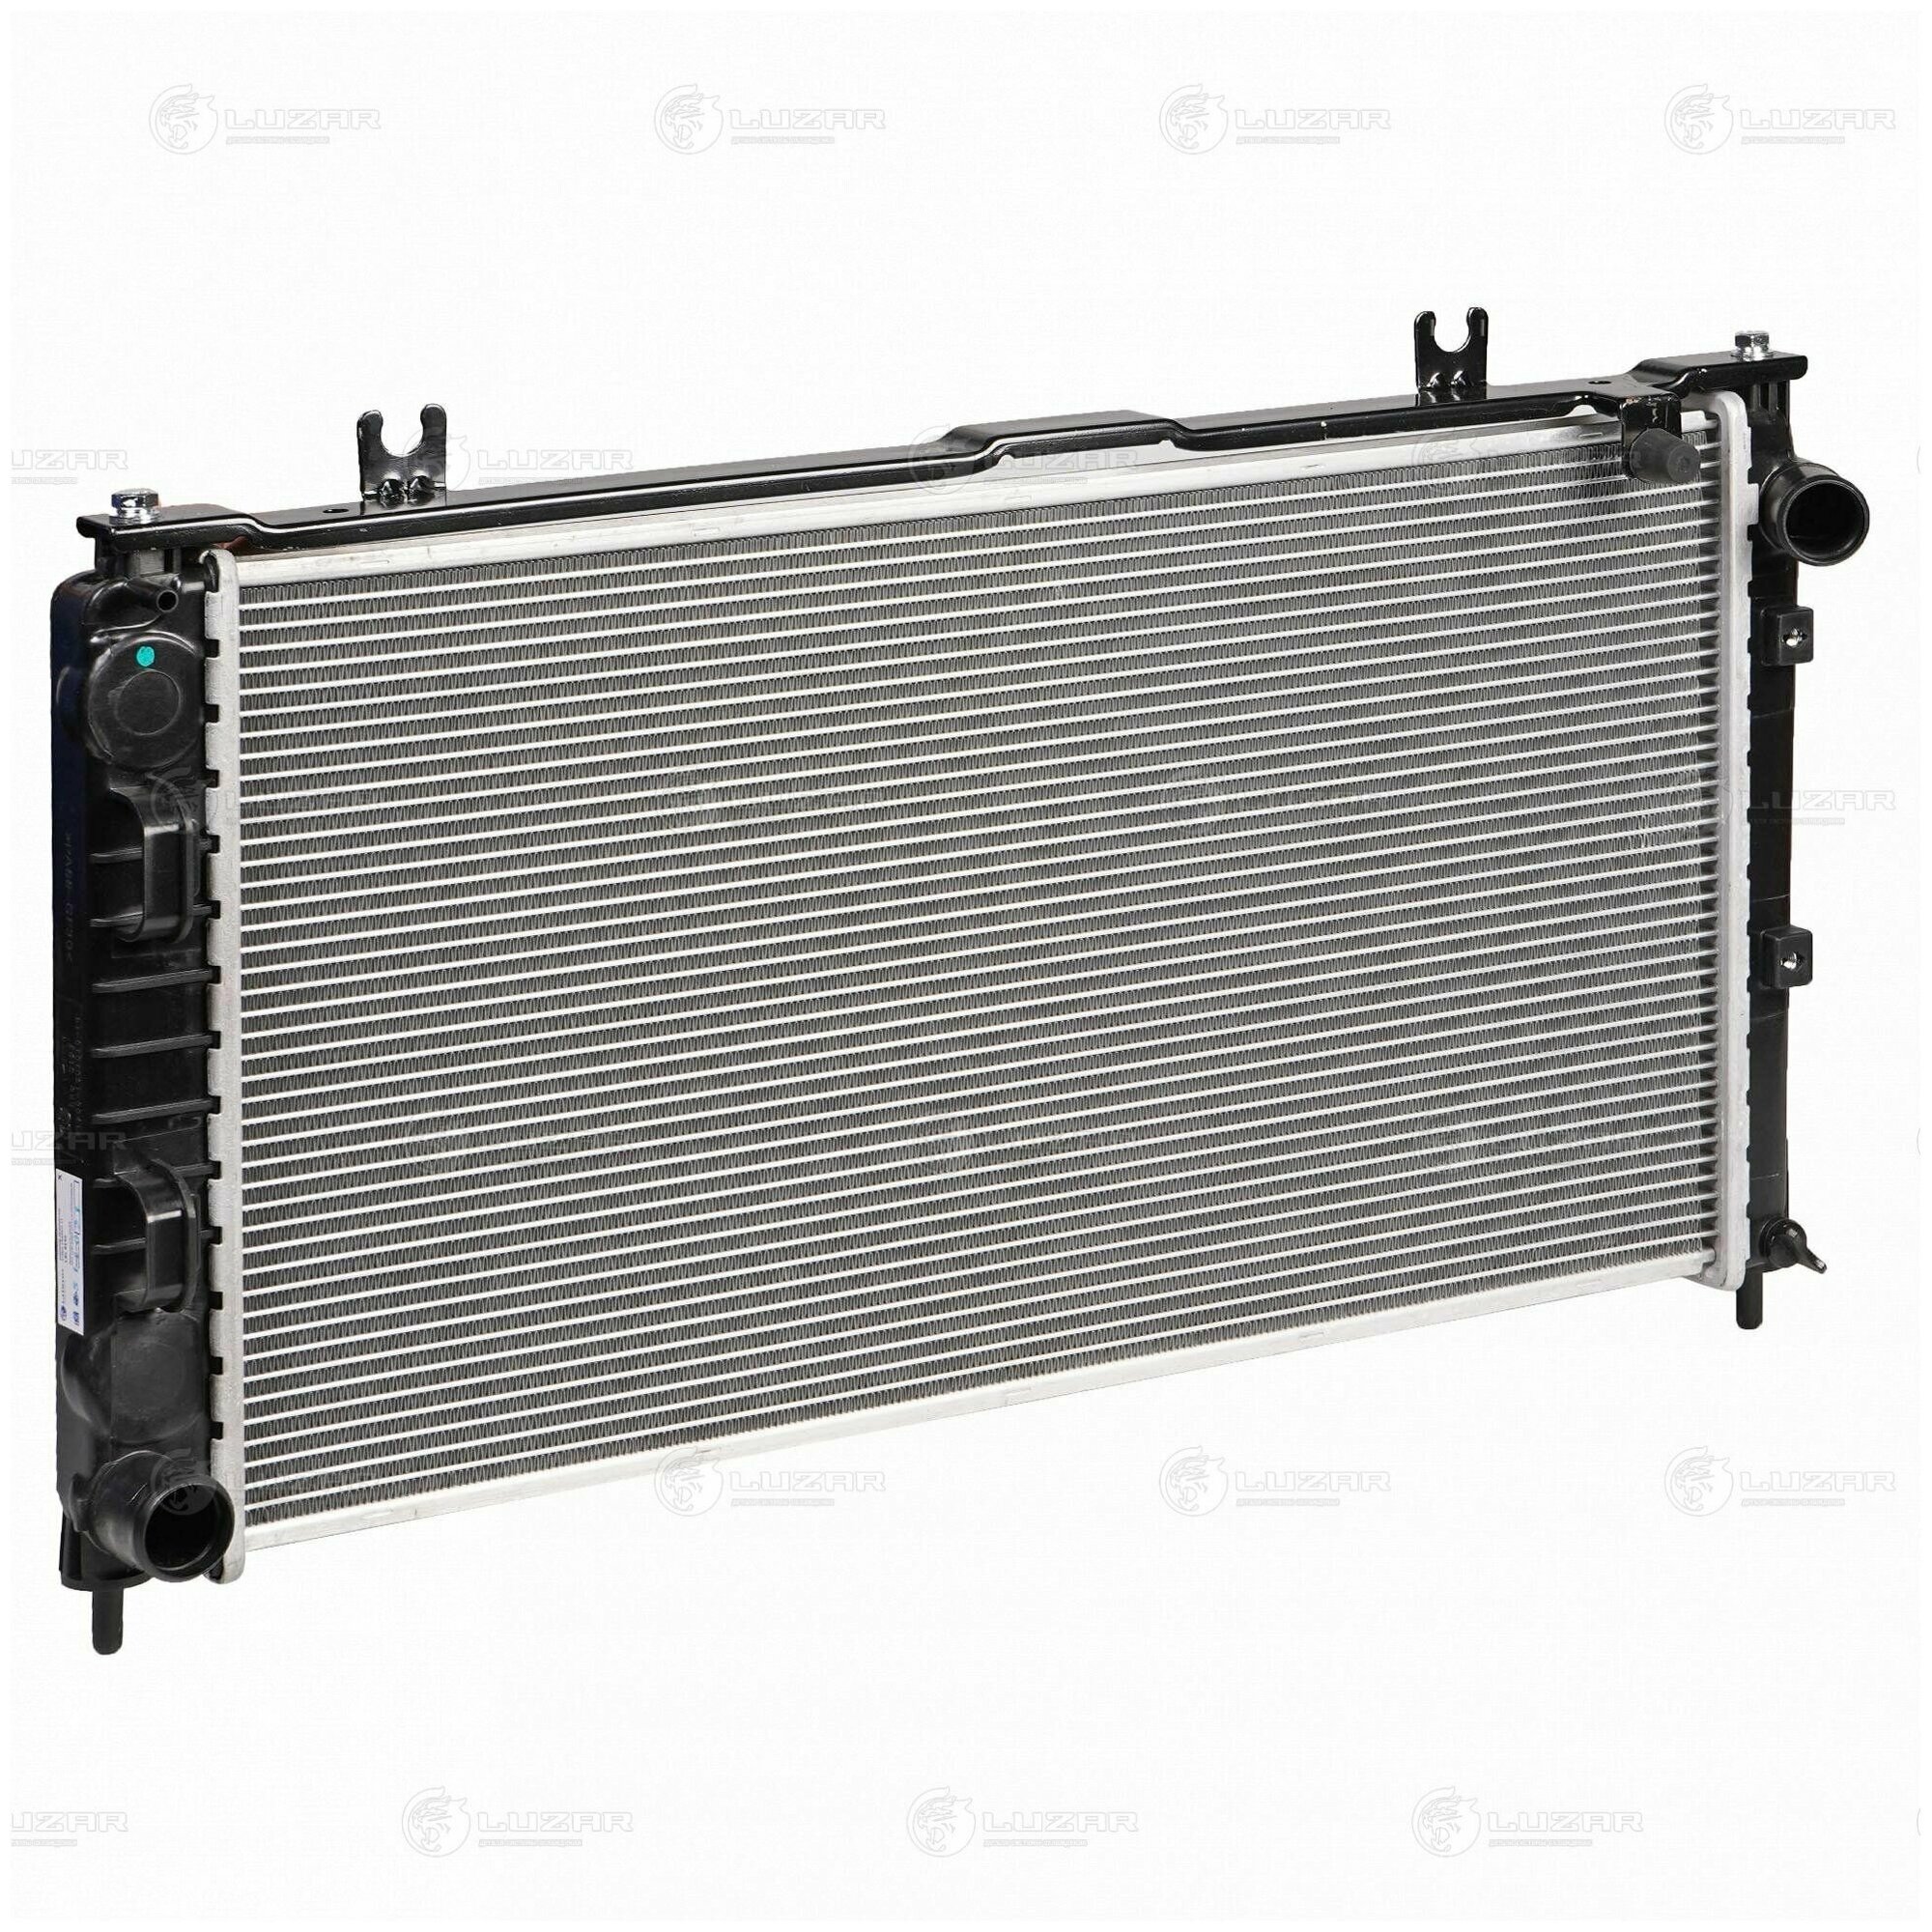 Радиатор охлаждения для автомобилей Лада 2190 "Гранта" (15 ) (тип KDAC) (паяный) LUZAR LRc 0195 - Luzar арт. LRc 0195